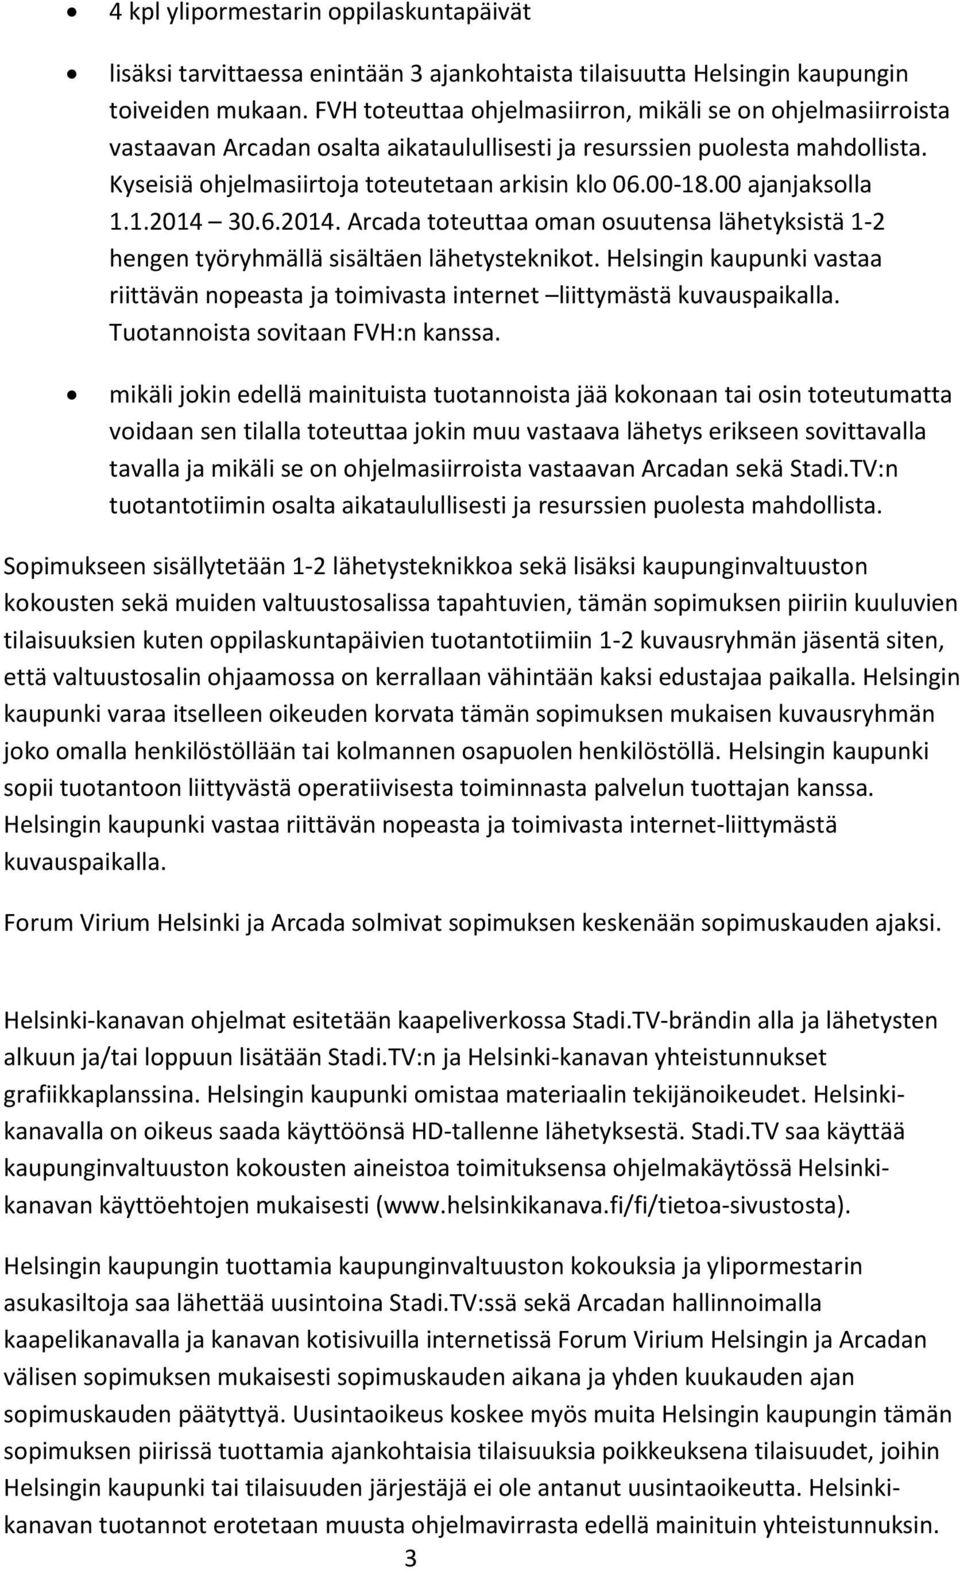 00 ajanjaksolla 1.1.2014 30.6.2014. Arcada toteuttaa oman osuutensa lähetyksistä 1-2 hengen työryhmällä sisältäen lähetysteknikot.